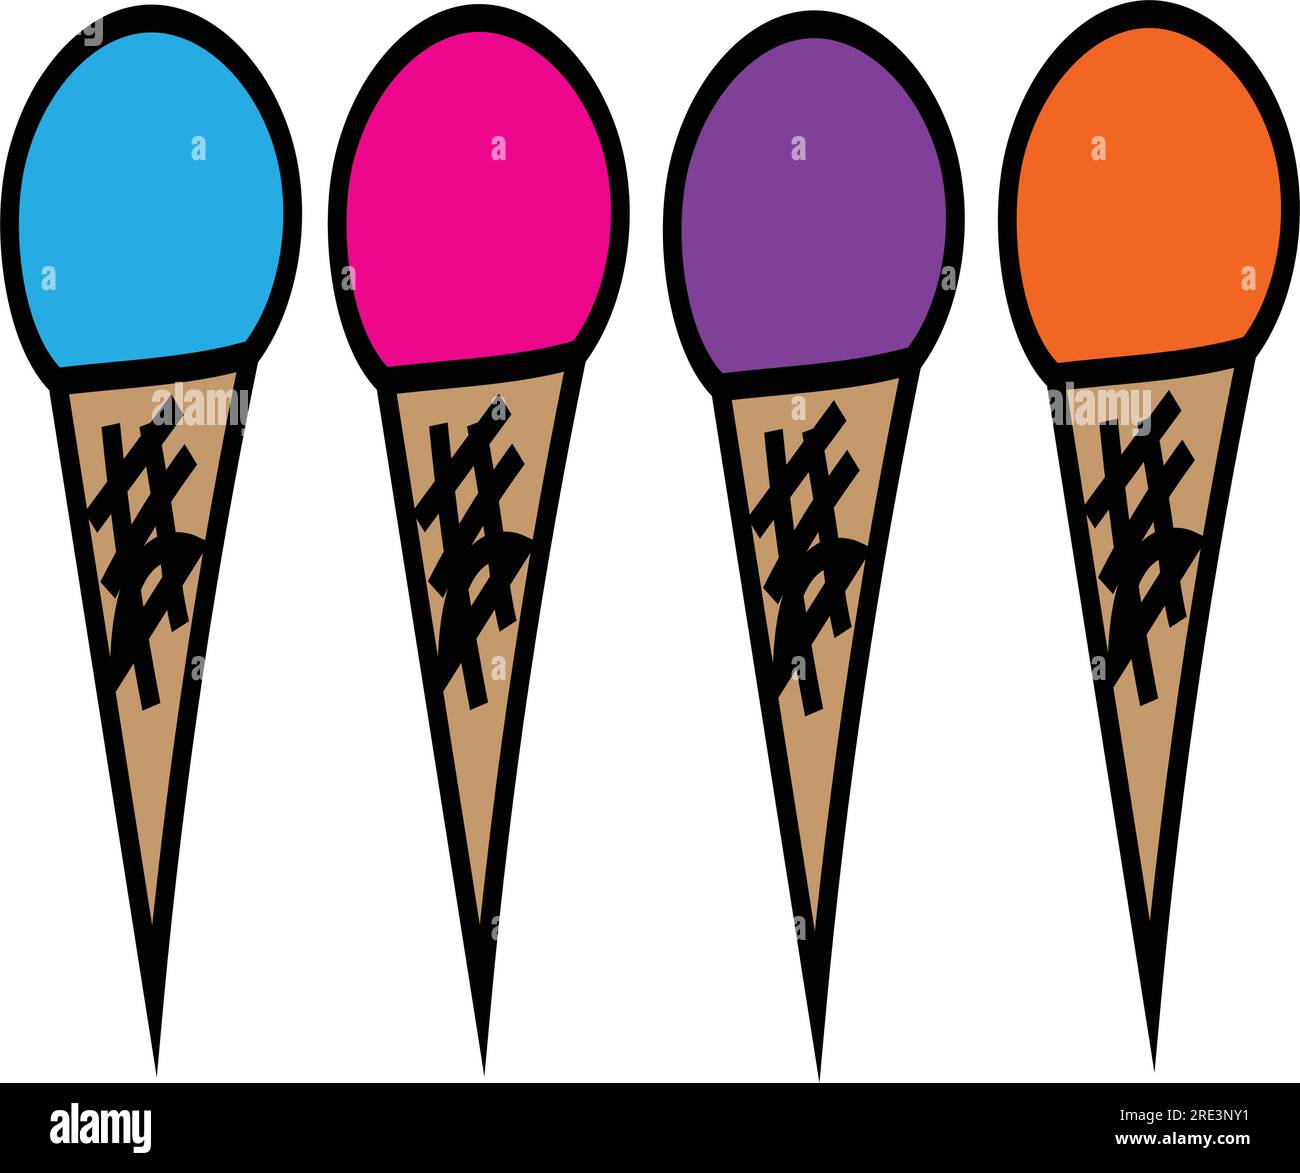 A set of four colorful sorbet - sherbert - ice cream - frozen yogurt cones in vector Stock Vector